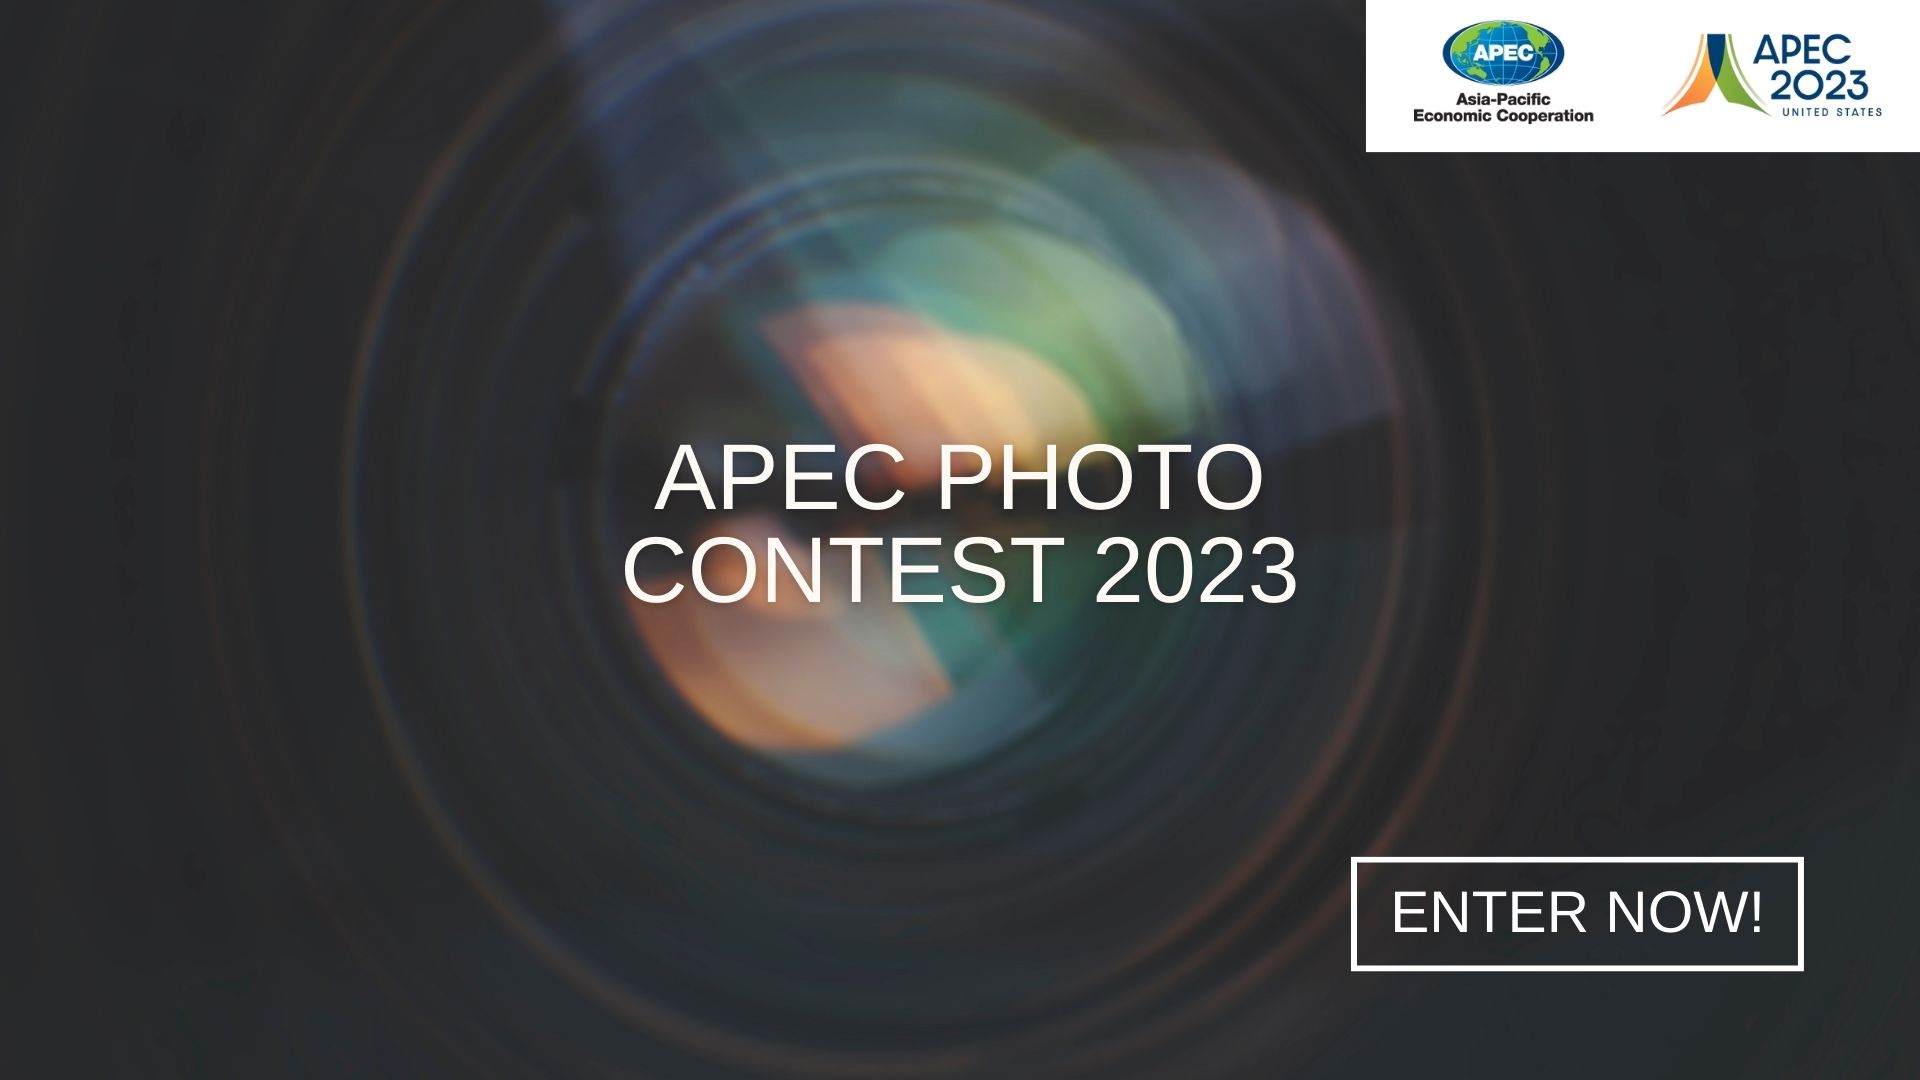 APEC Photo Contest 2023 APEC